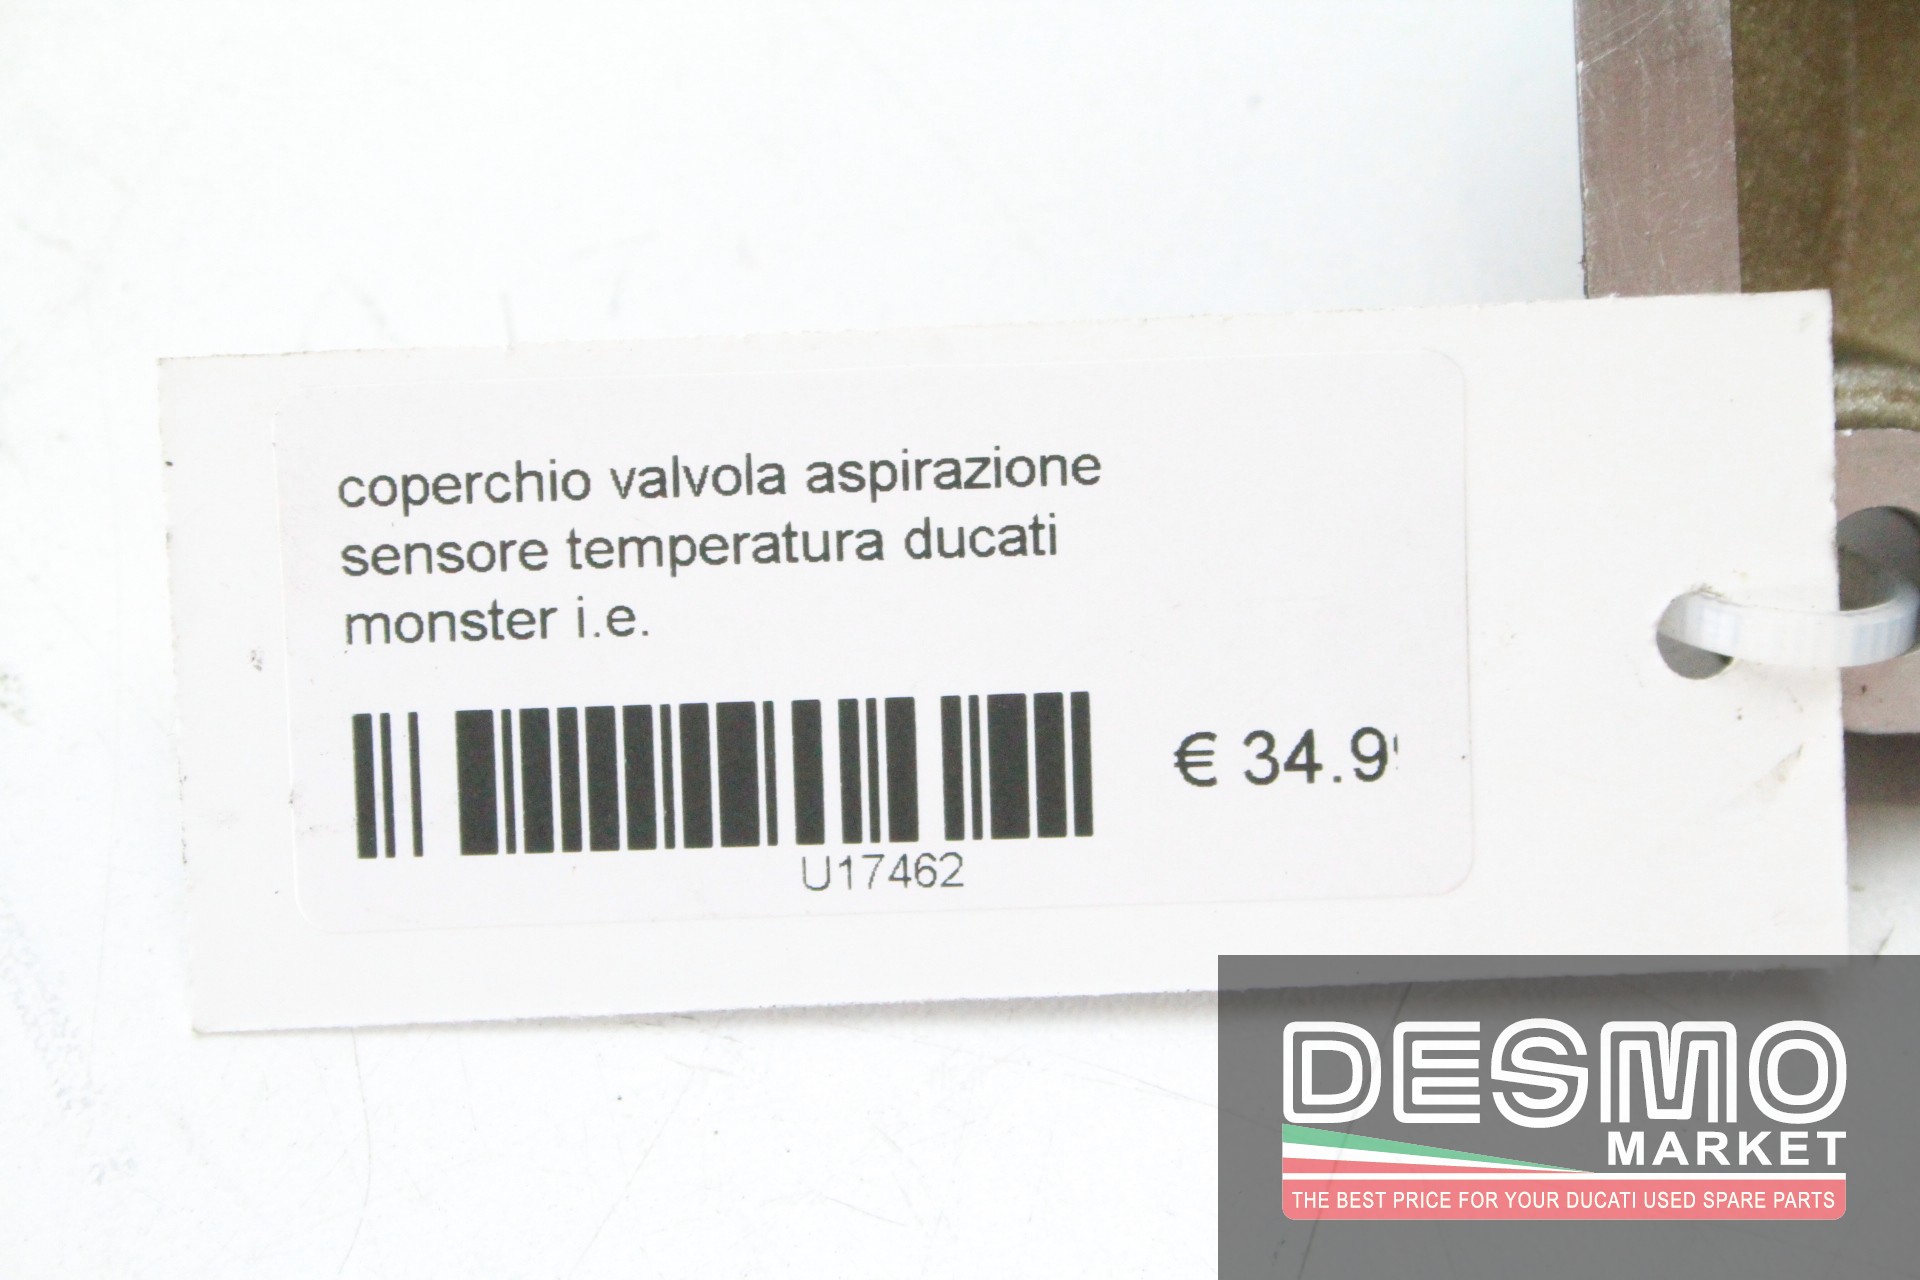 Intake valve cover temperature sensor Ducati Monster I.E. - Desmo Market